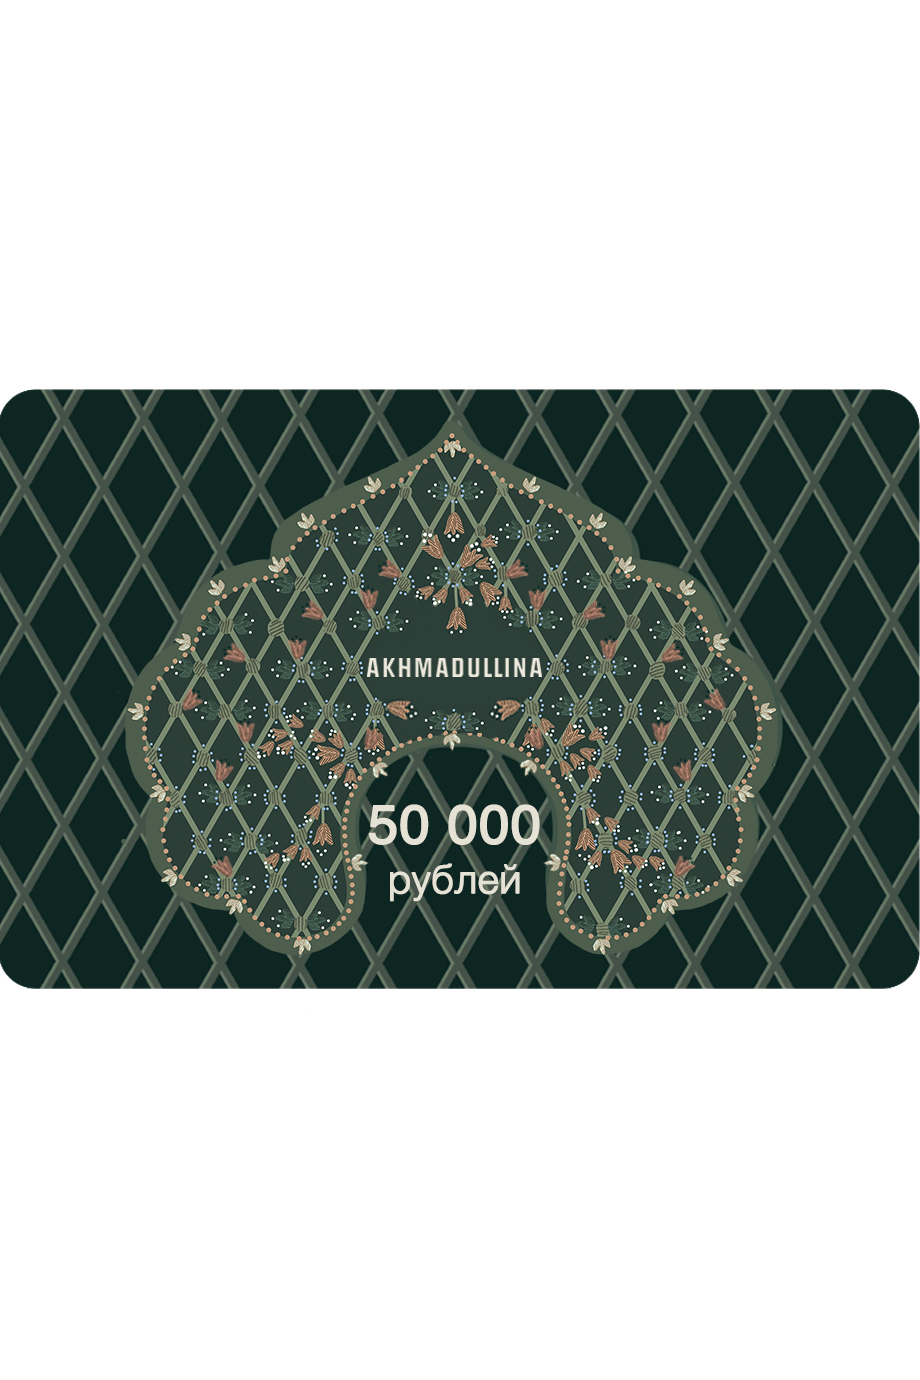 Подарочный сертификат 50 000 руб. AKHMADULLINA